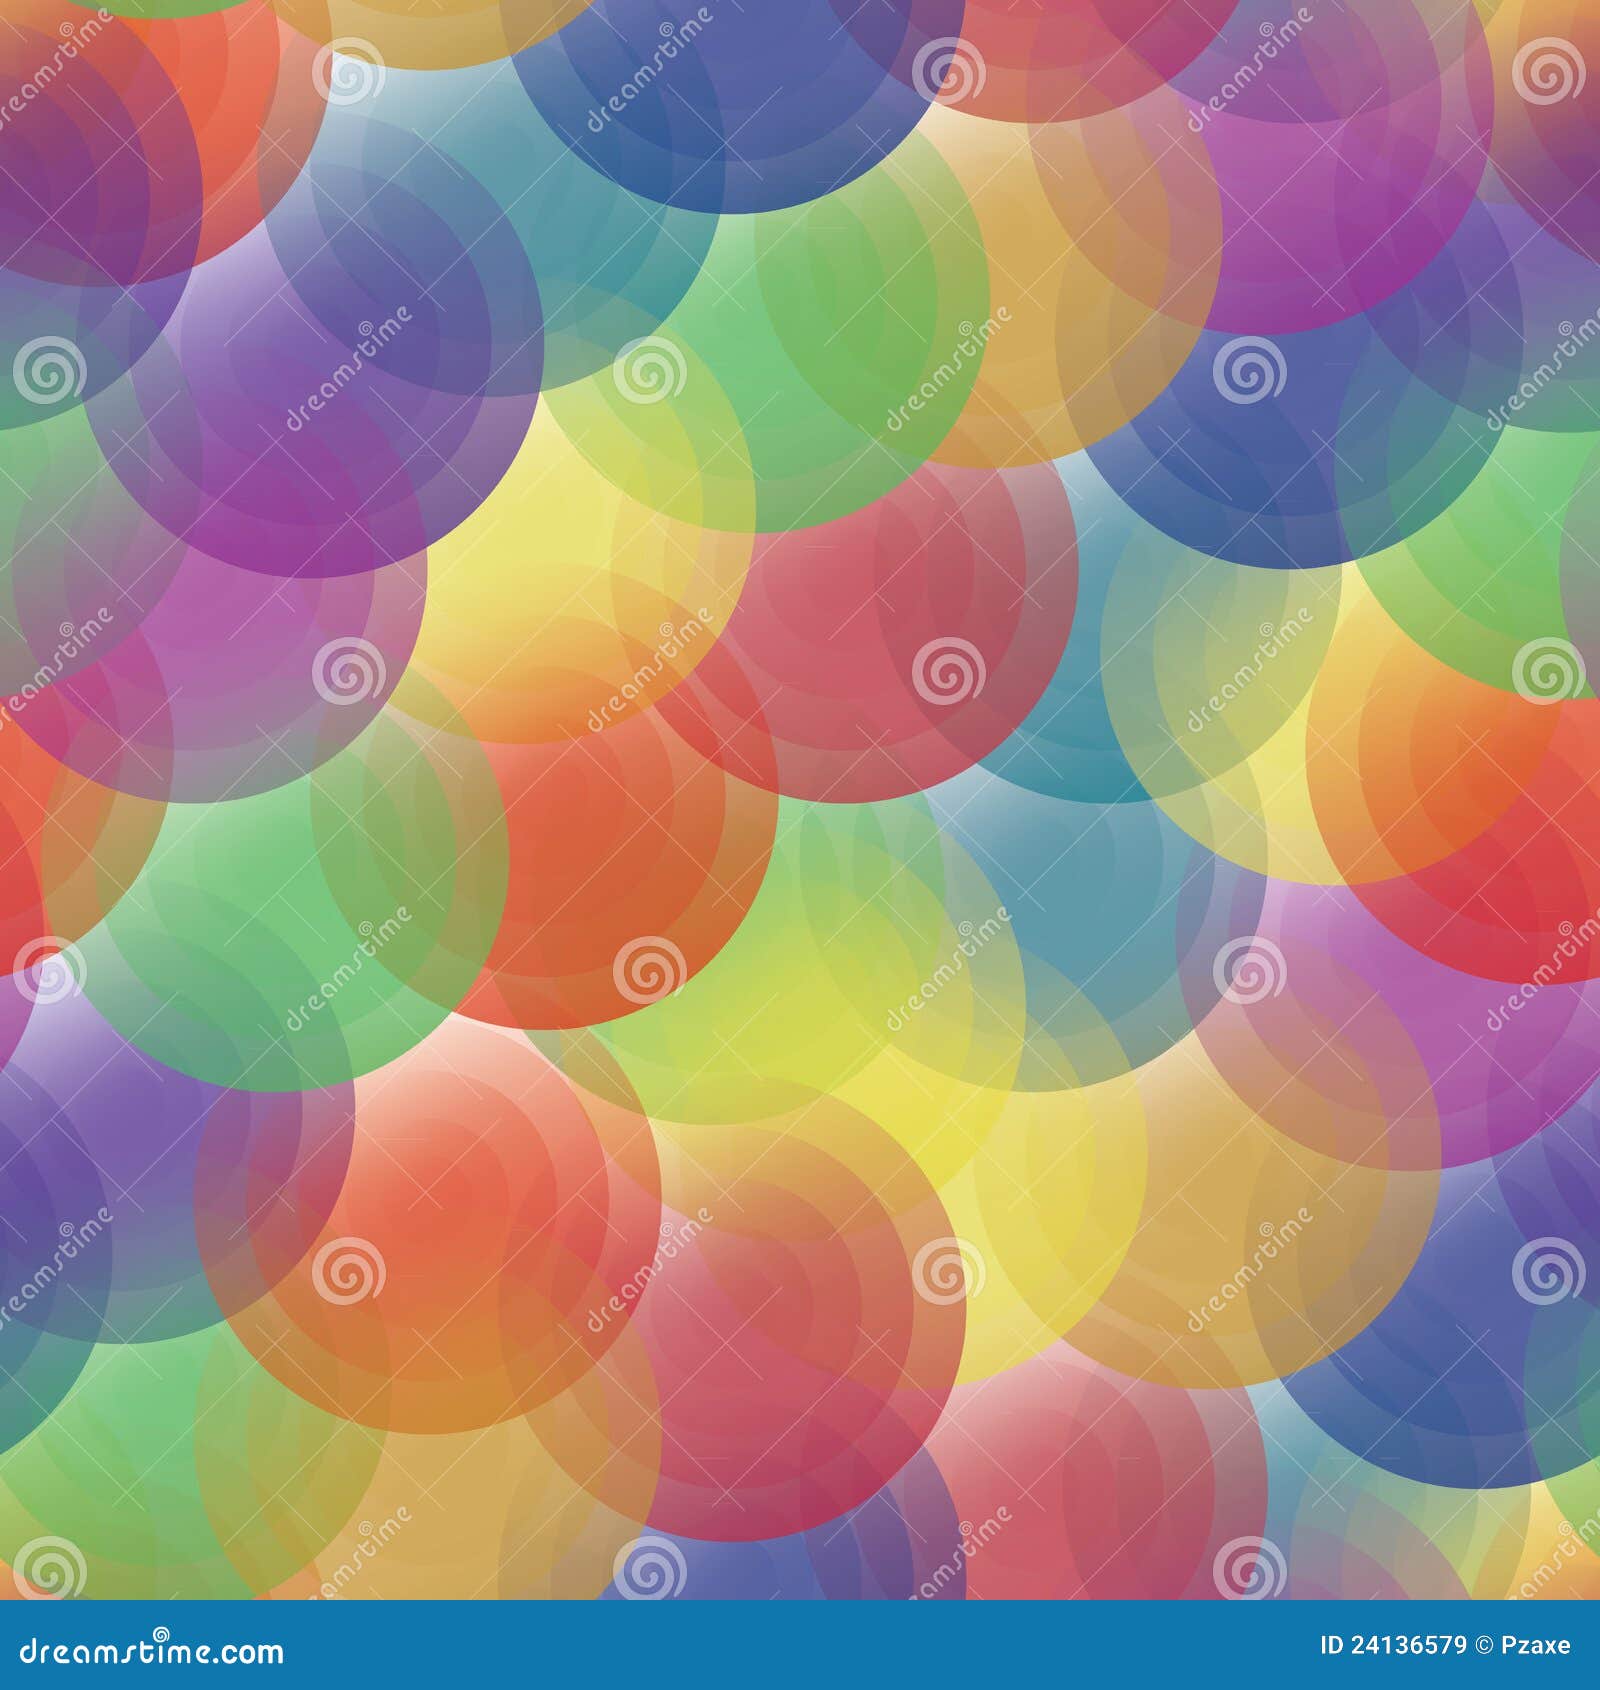 Vector Achtergrond  Kleuren Transparante Cirkels Vector Illustratie  Illustratie bestaande uit 